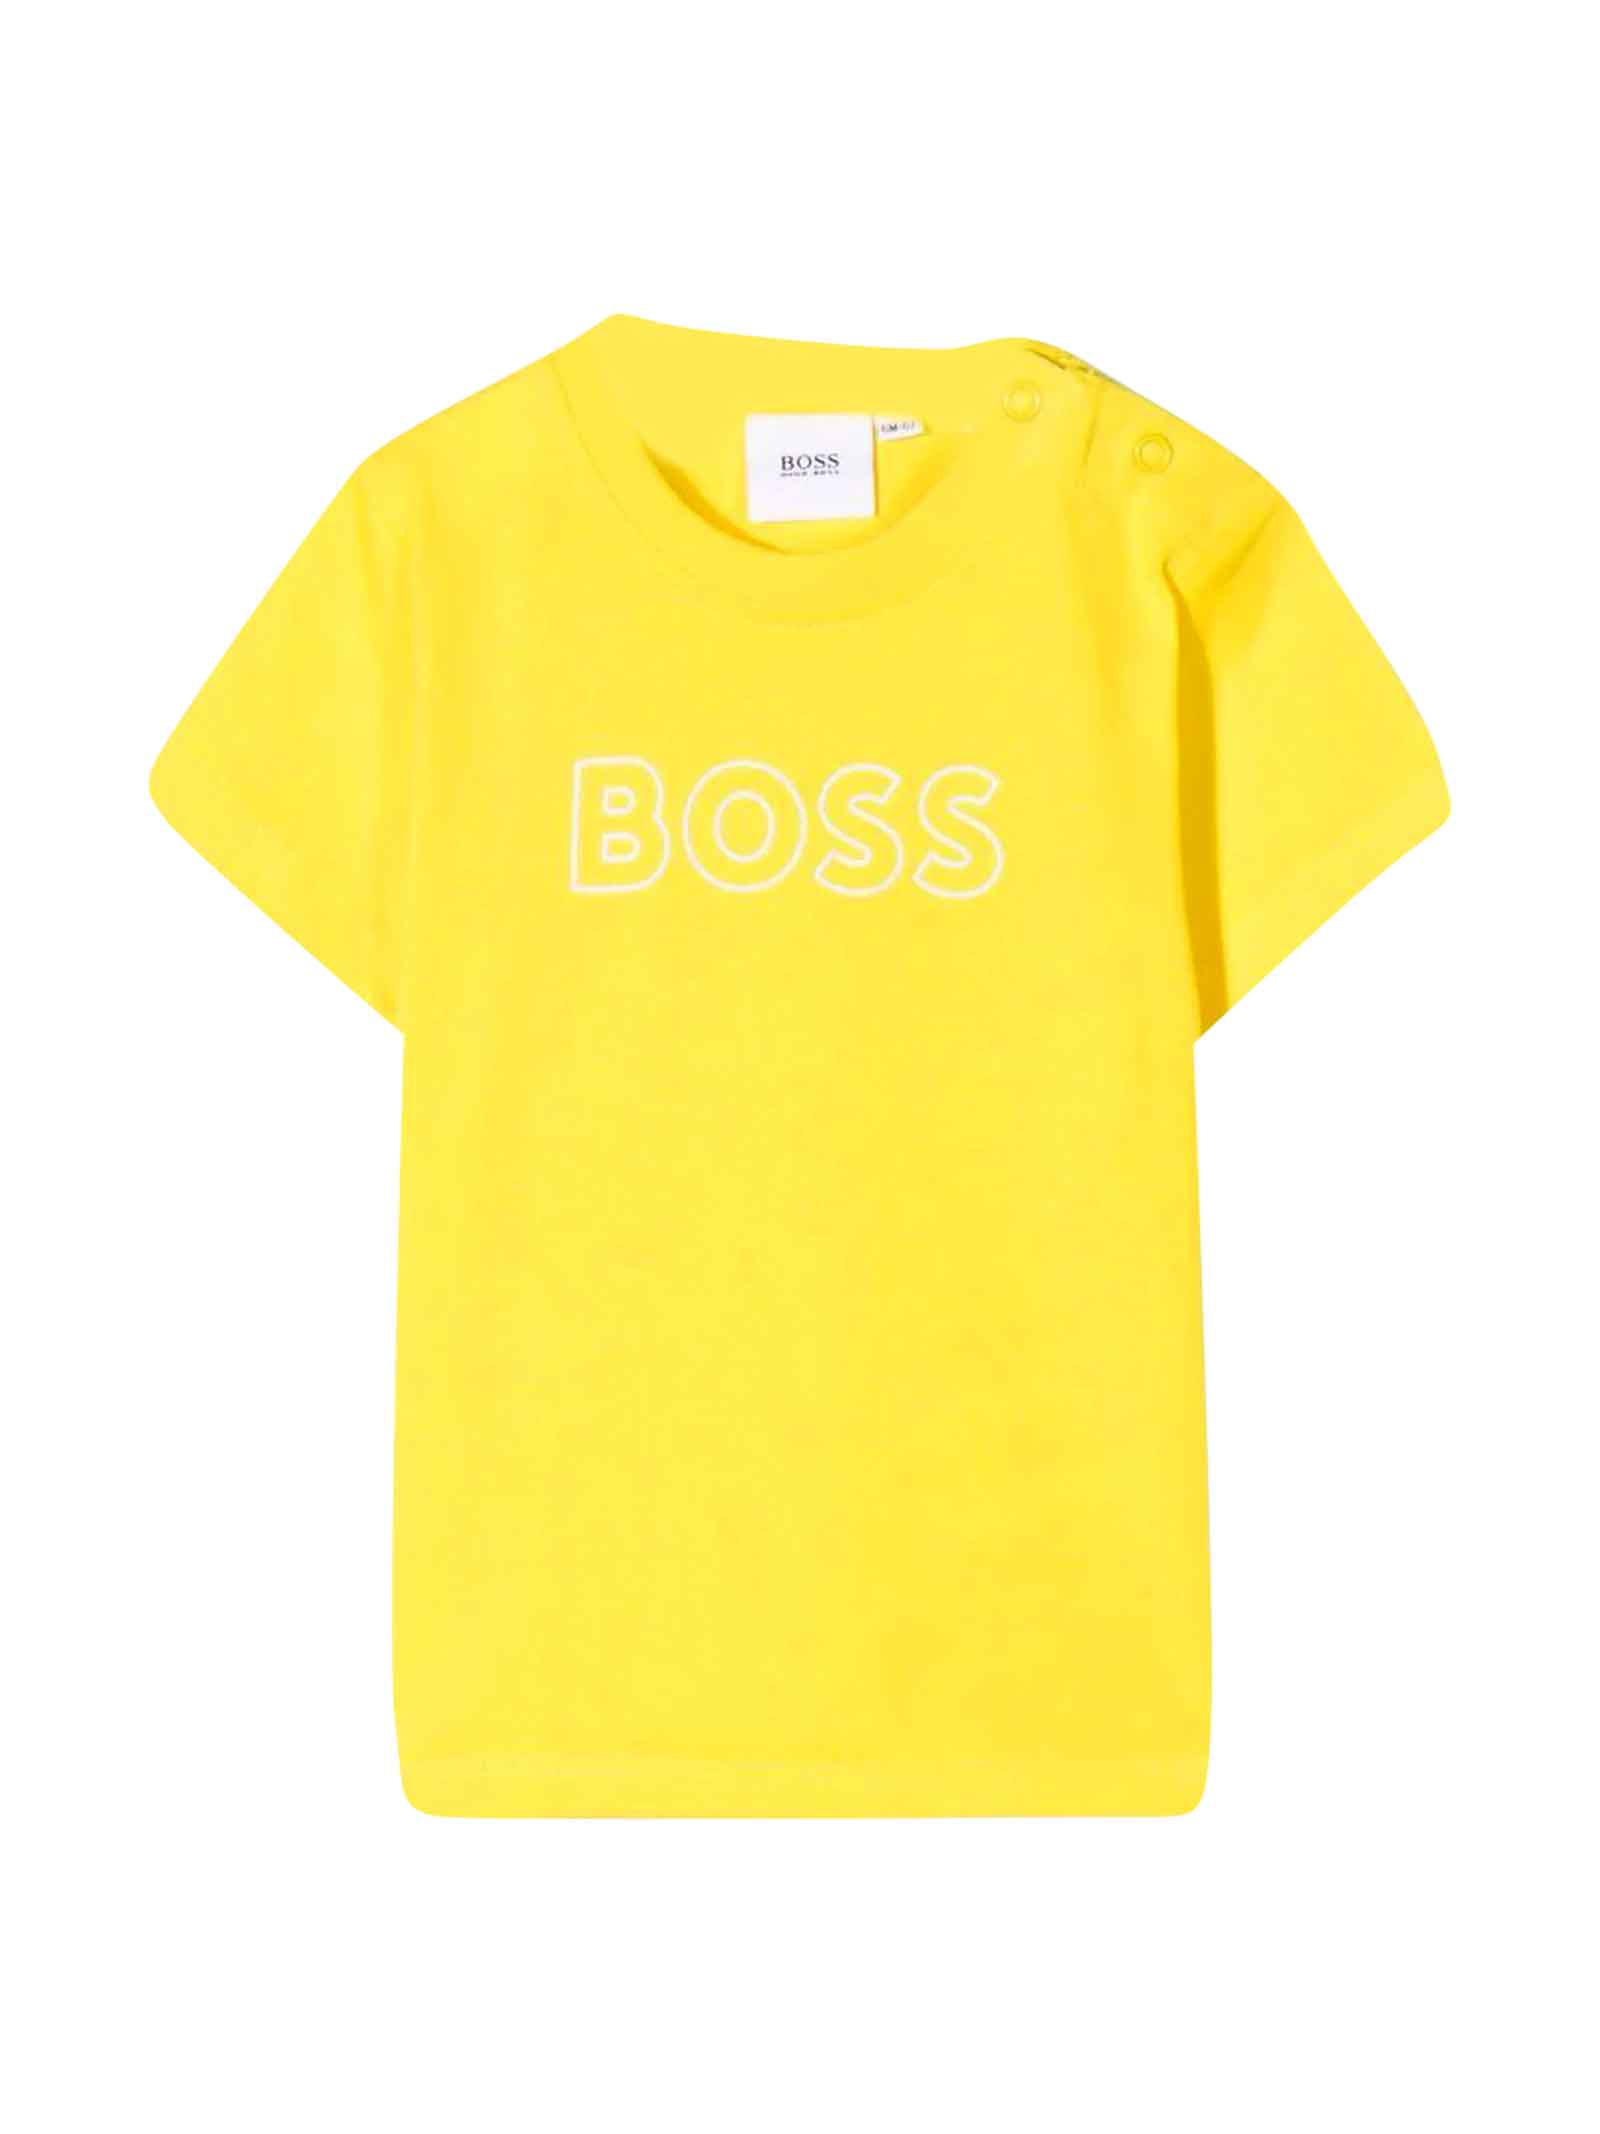 Hugo Boss Yellow T-shirt Baby Unisex